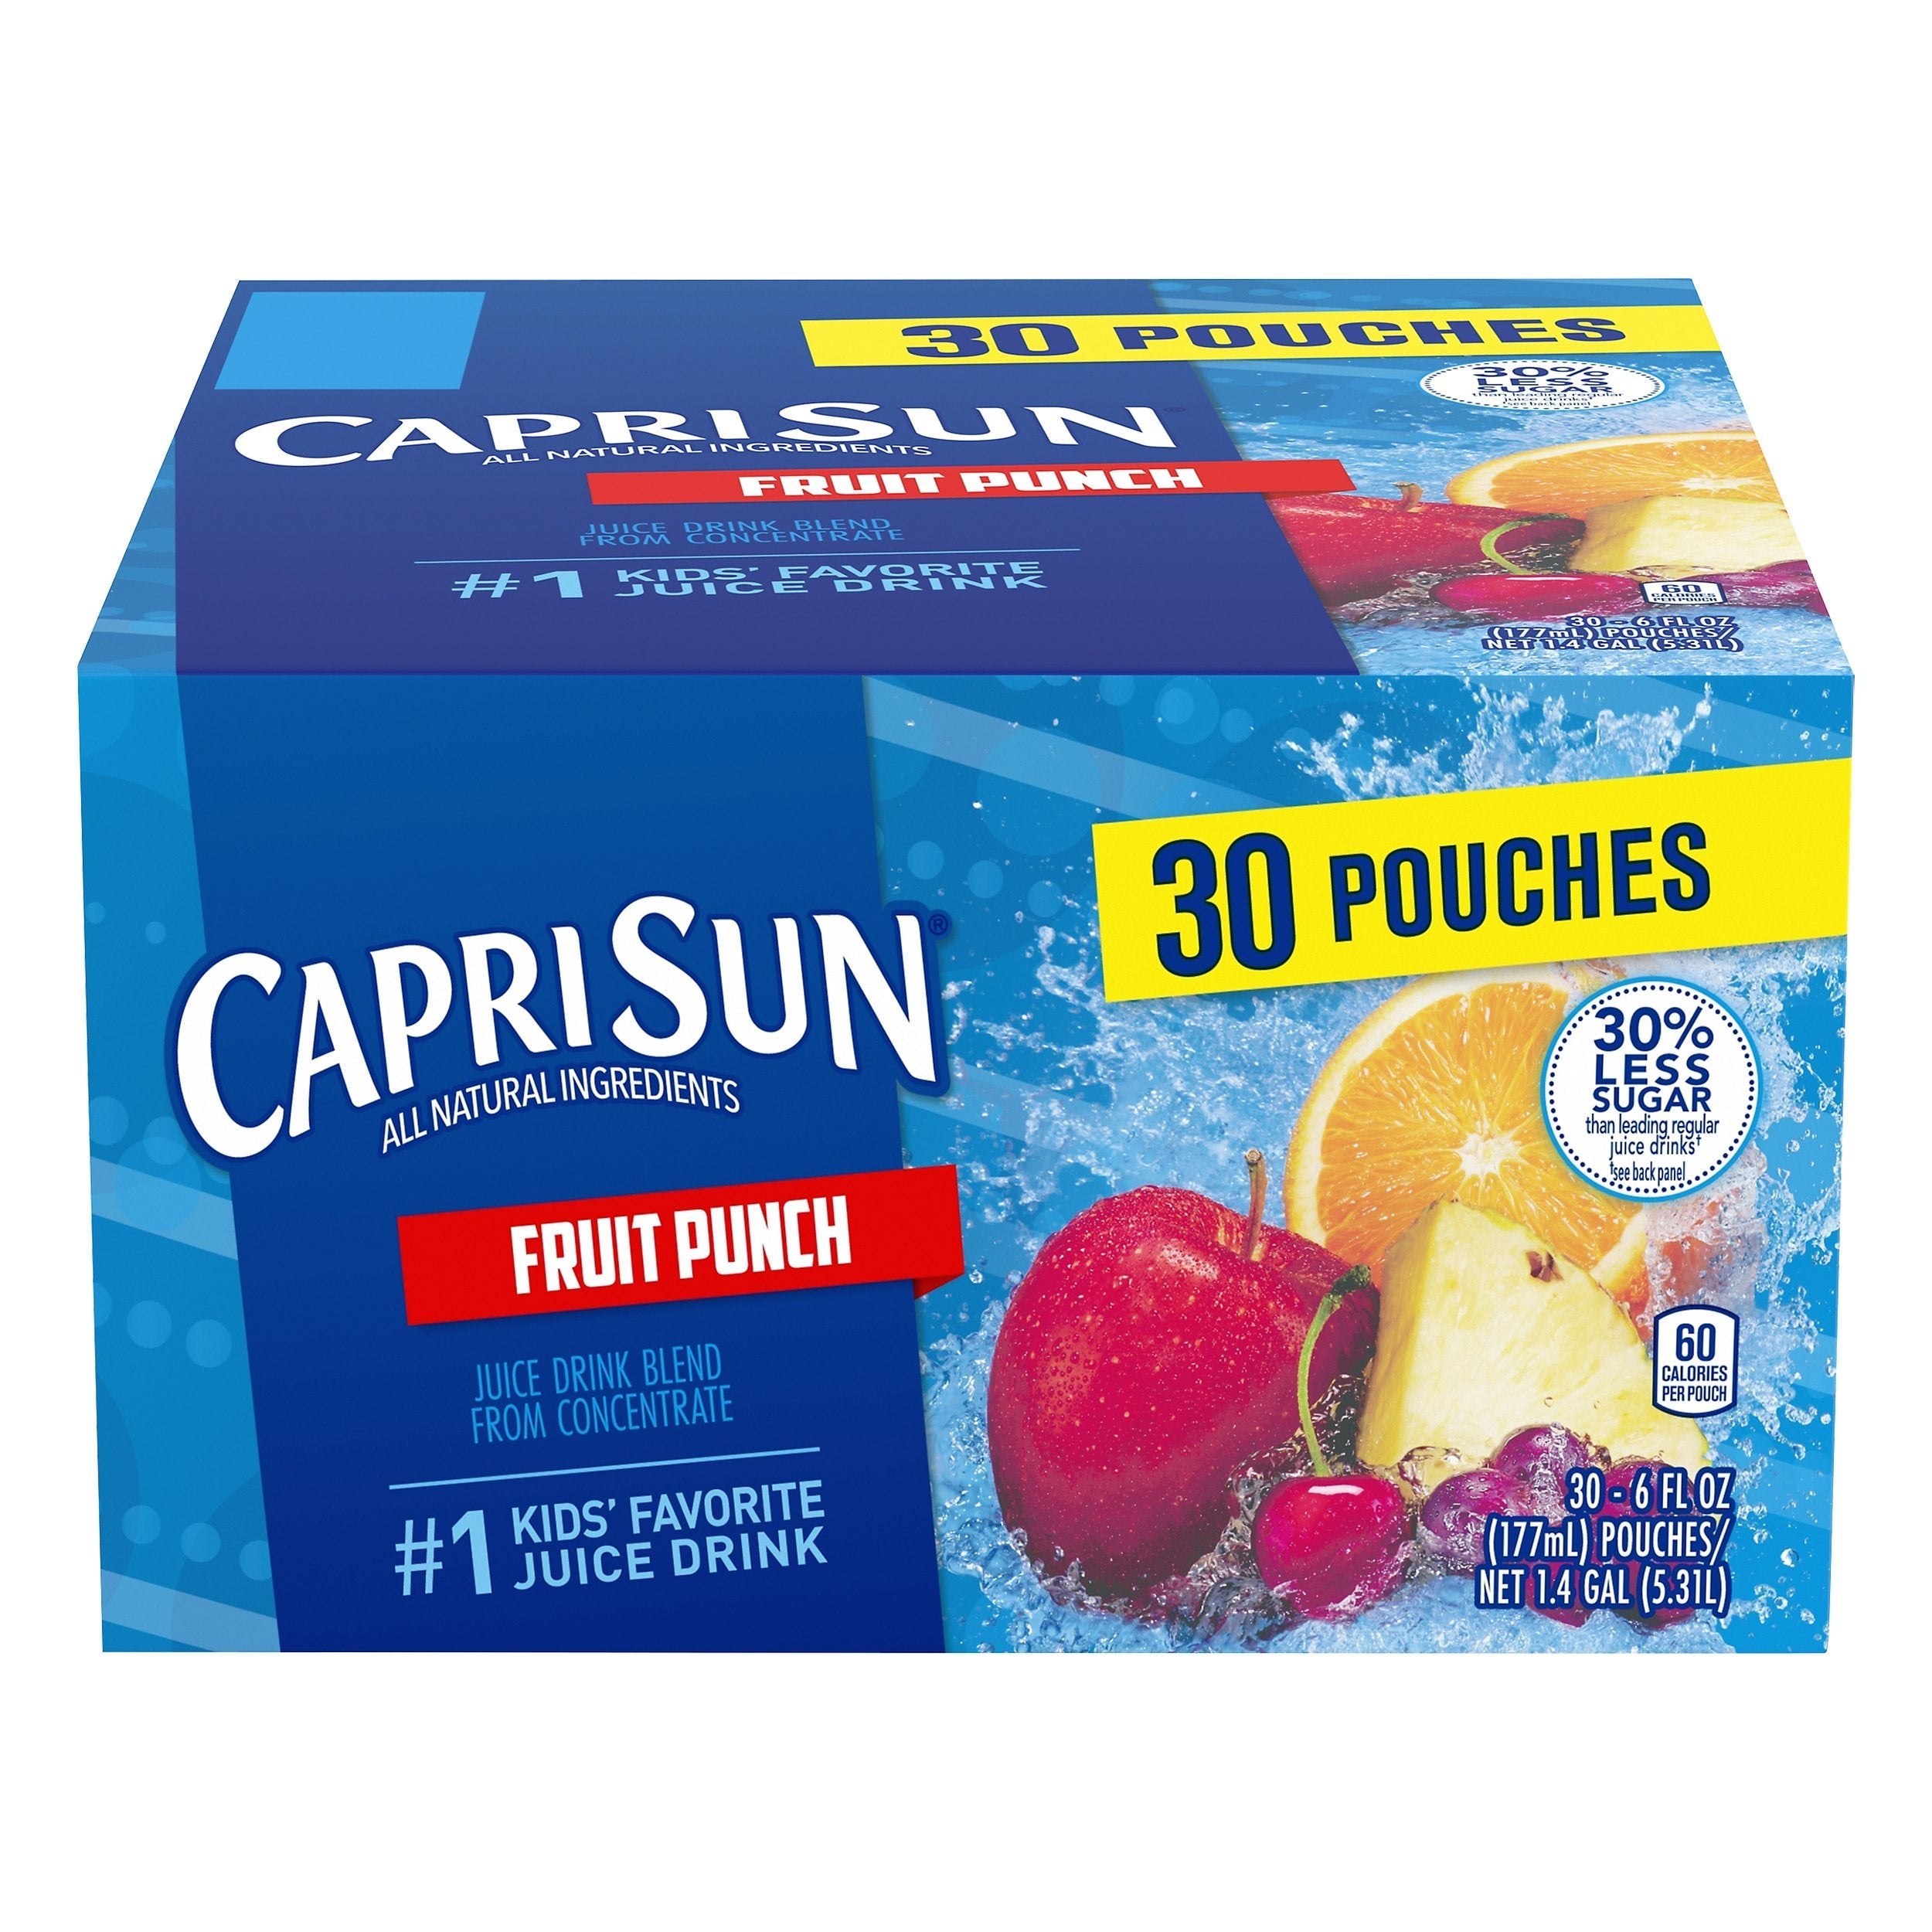 Capri Sun 100% Fruit Punch Juice - 10pk/6 fl oz Pouches